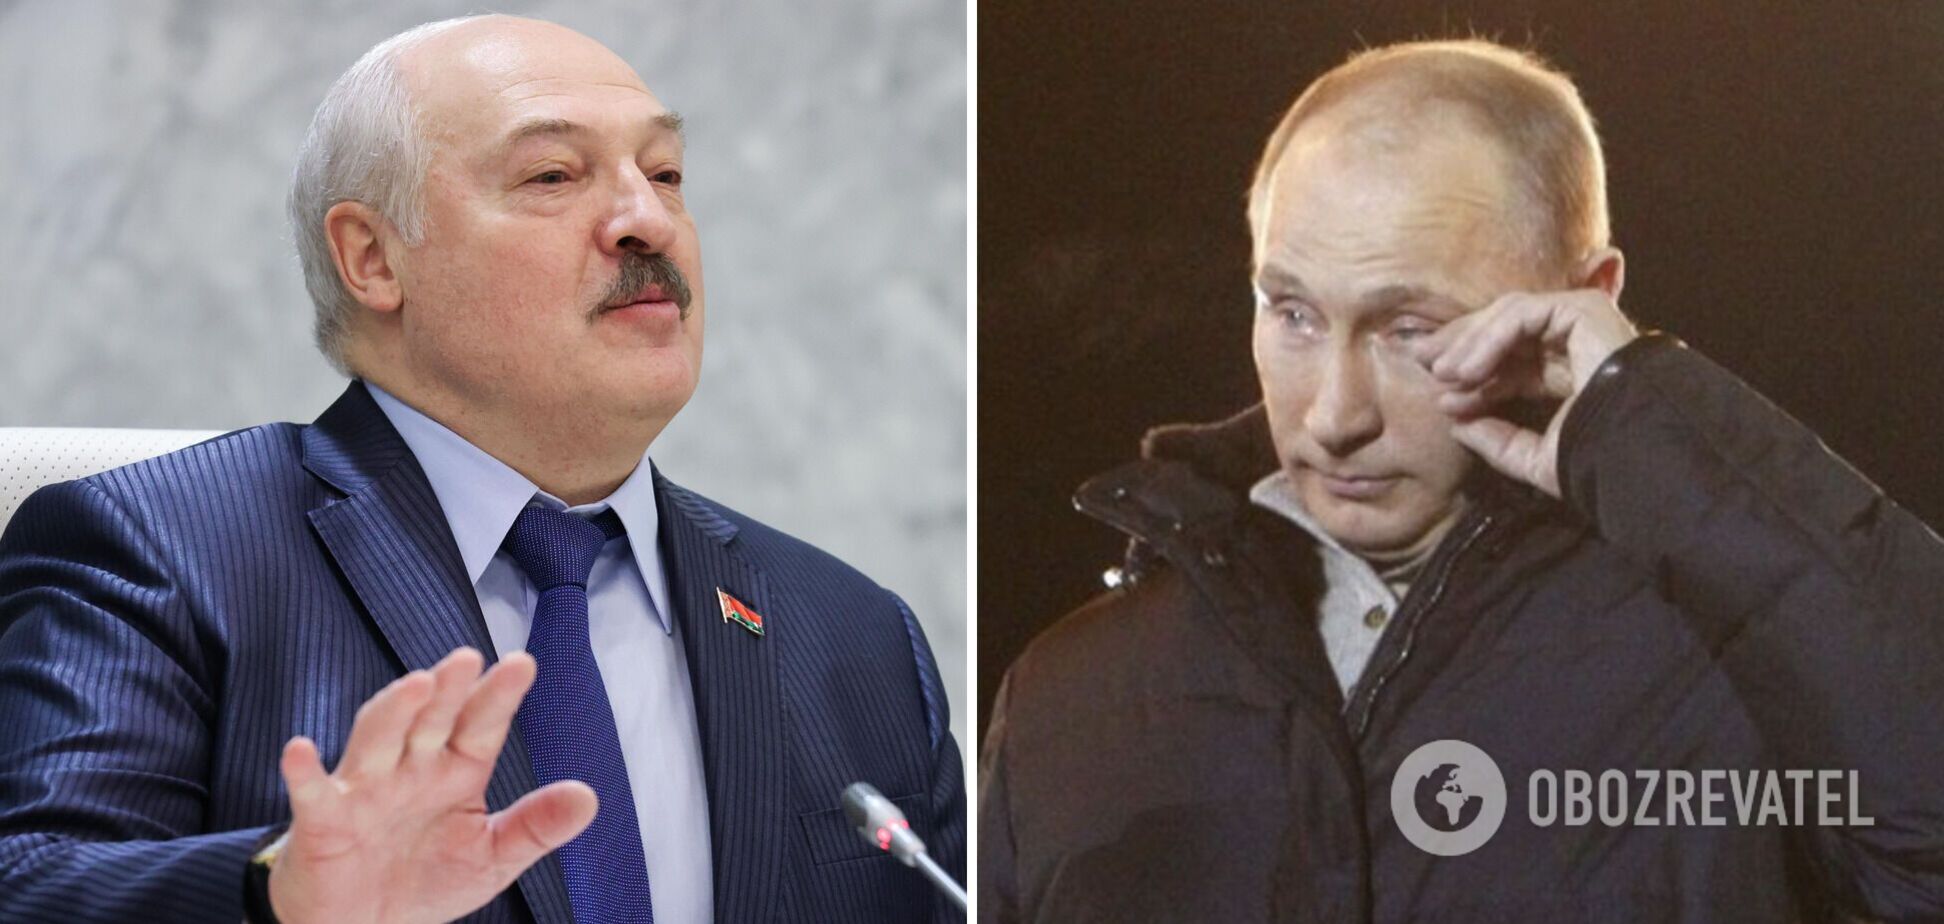 'Треба ухвалити рішення': Лукашенко спробував заспокоїти Путіна через втечу росіян із країни через мобілізацію. Відео 